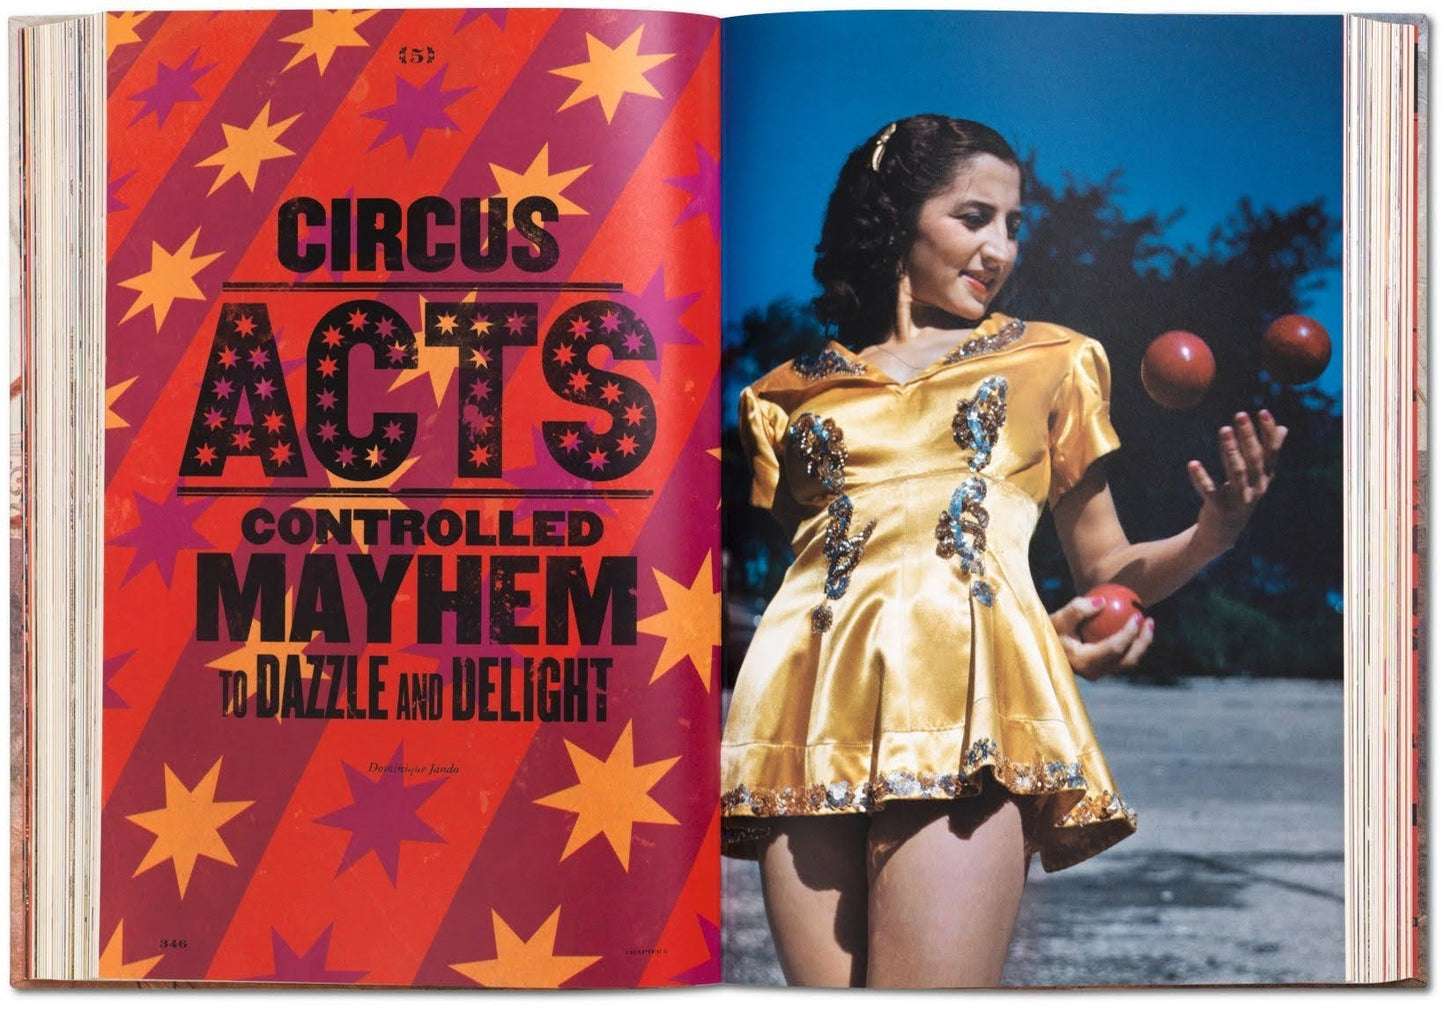 Circus,1870s-1950s